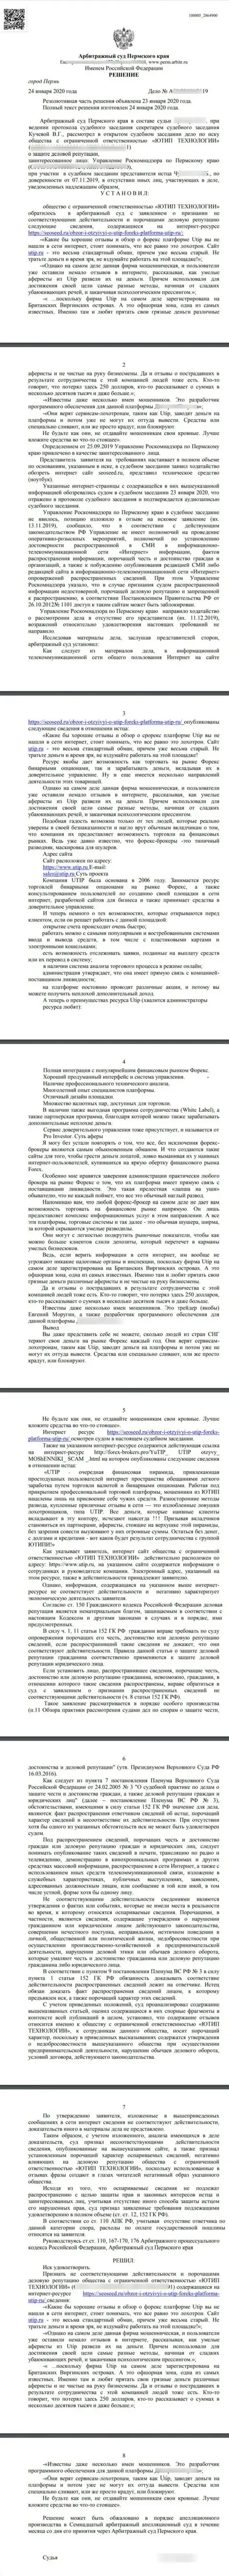 Исковое заявление мошенников UTIP Ru в отношении информационного сервиса seoseed, который удовлетворен самым справедливым судом